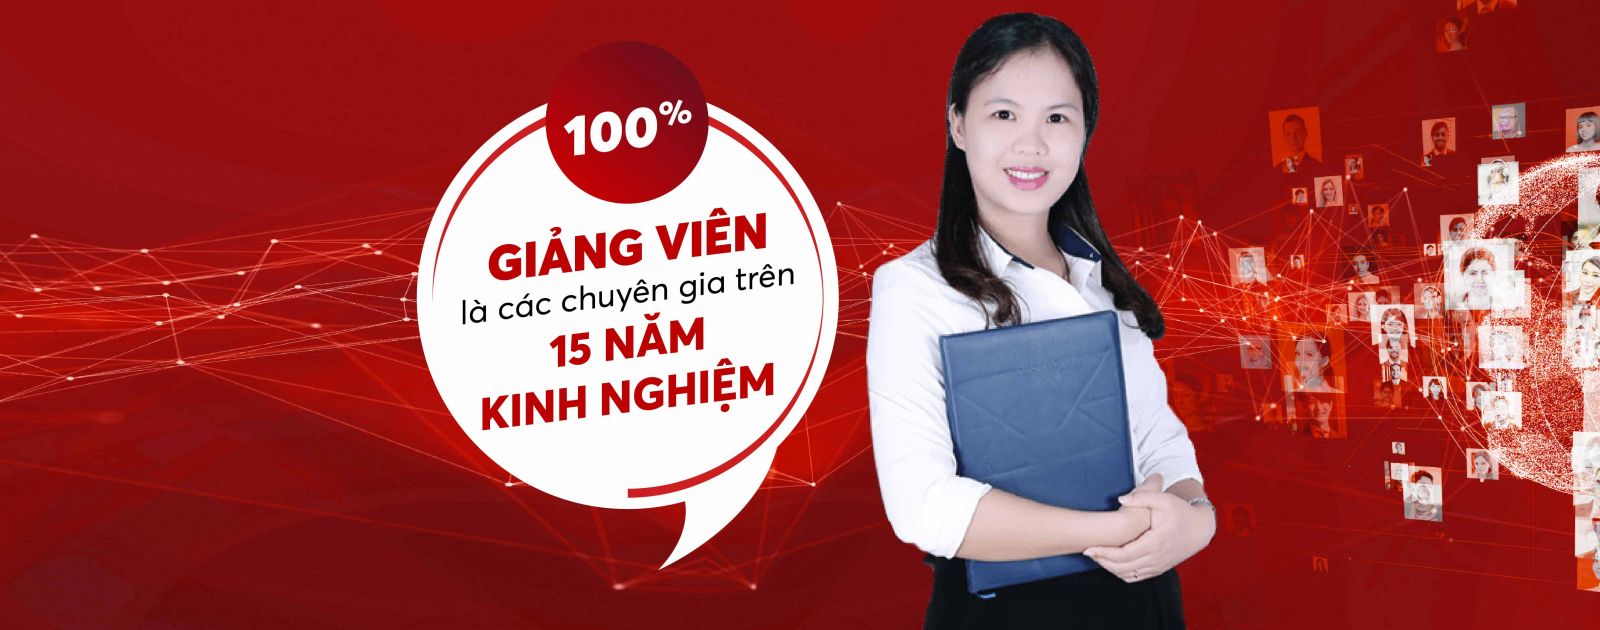  học Tiếng Trung tại Quỳnh Phụ Thái Bình  dạy Tiếng Trung ở Quỳnh Phụ Thái Bình  đào tạo Tiếng Trung ở Quỳnh Phụ Thái Bình